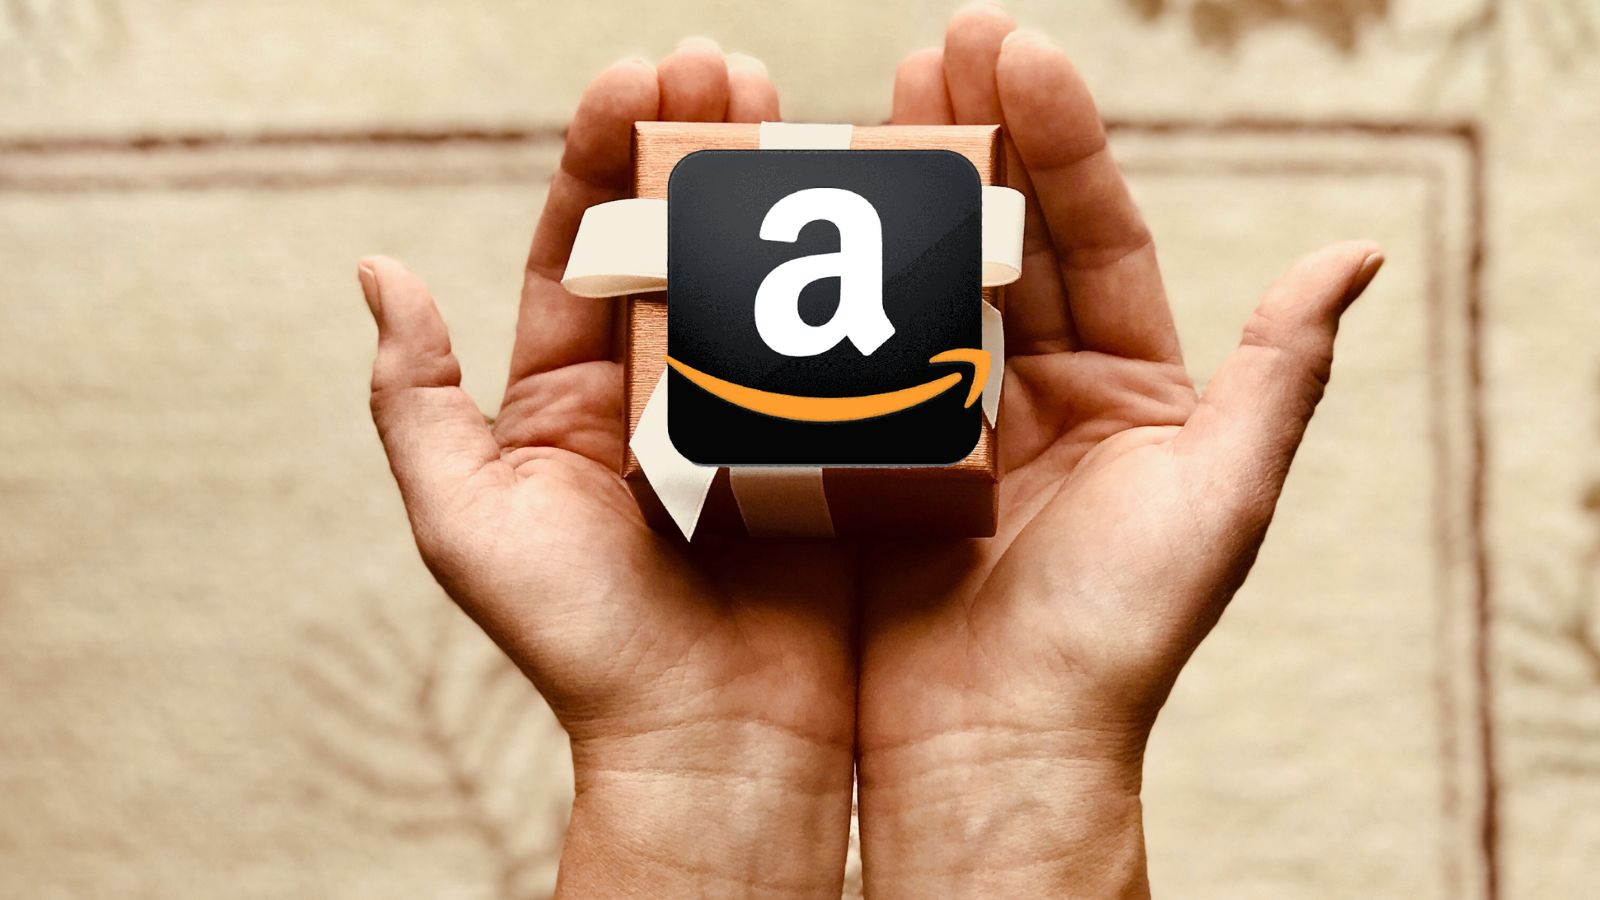 Amazon che REGALI, al 90% i migliori prodotti